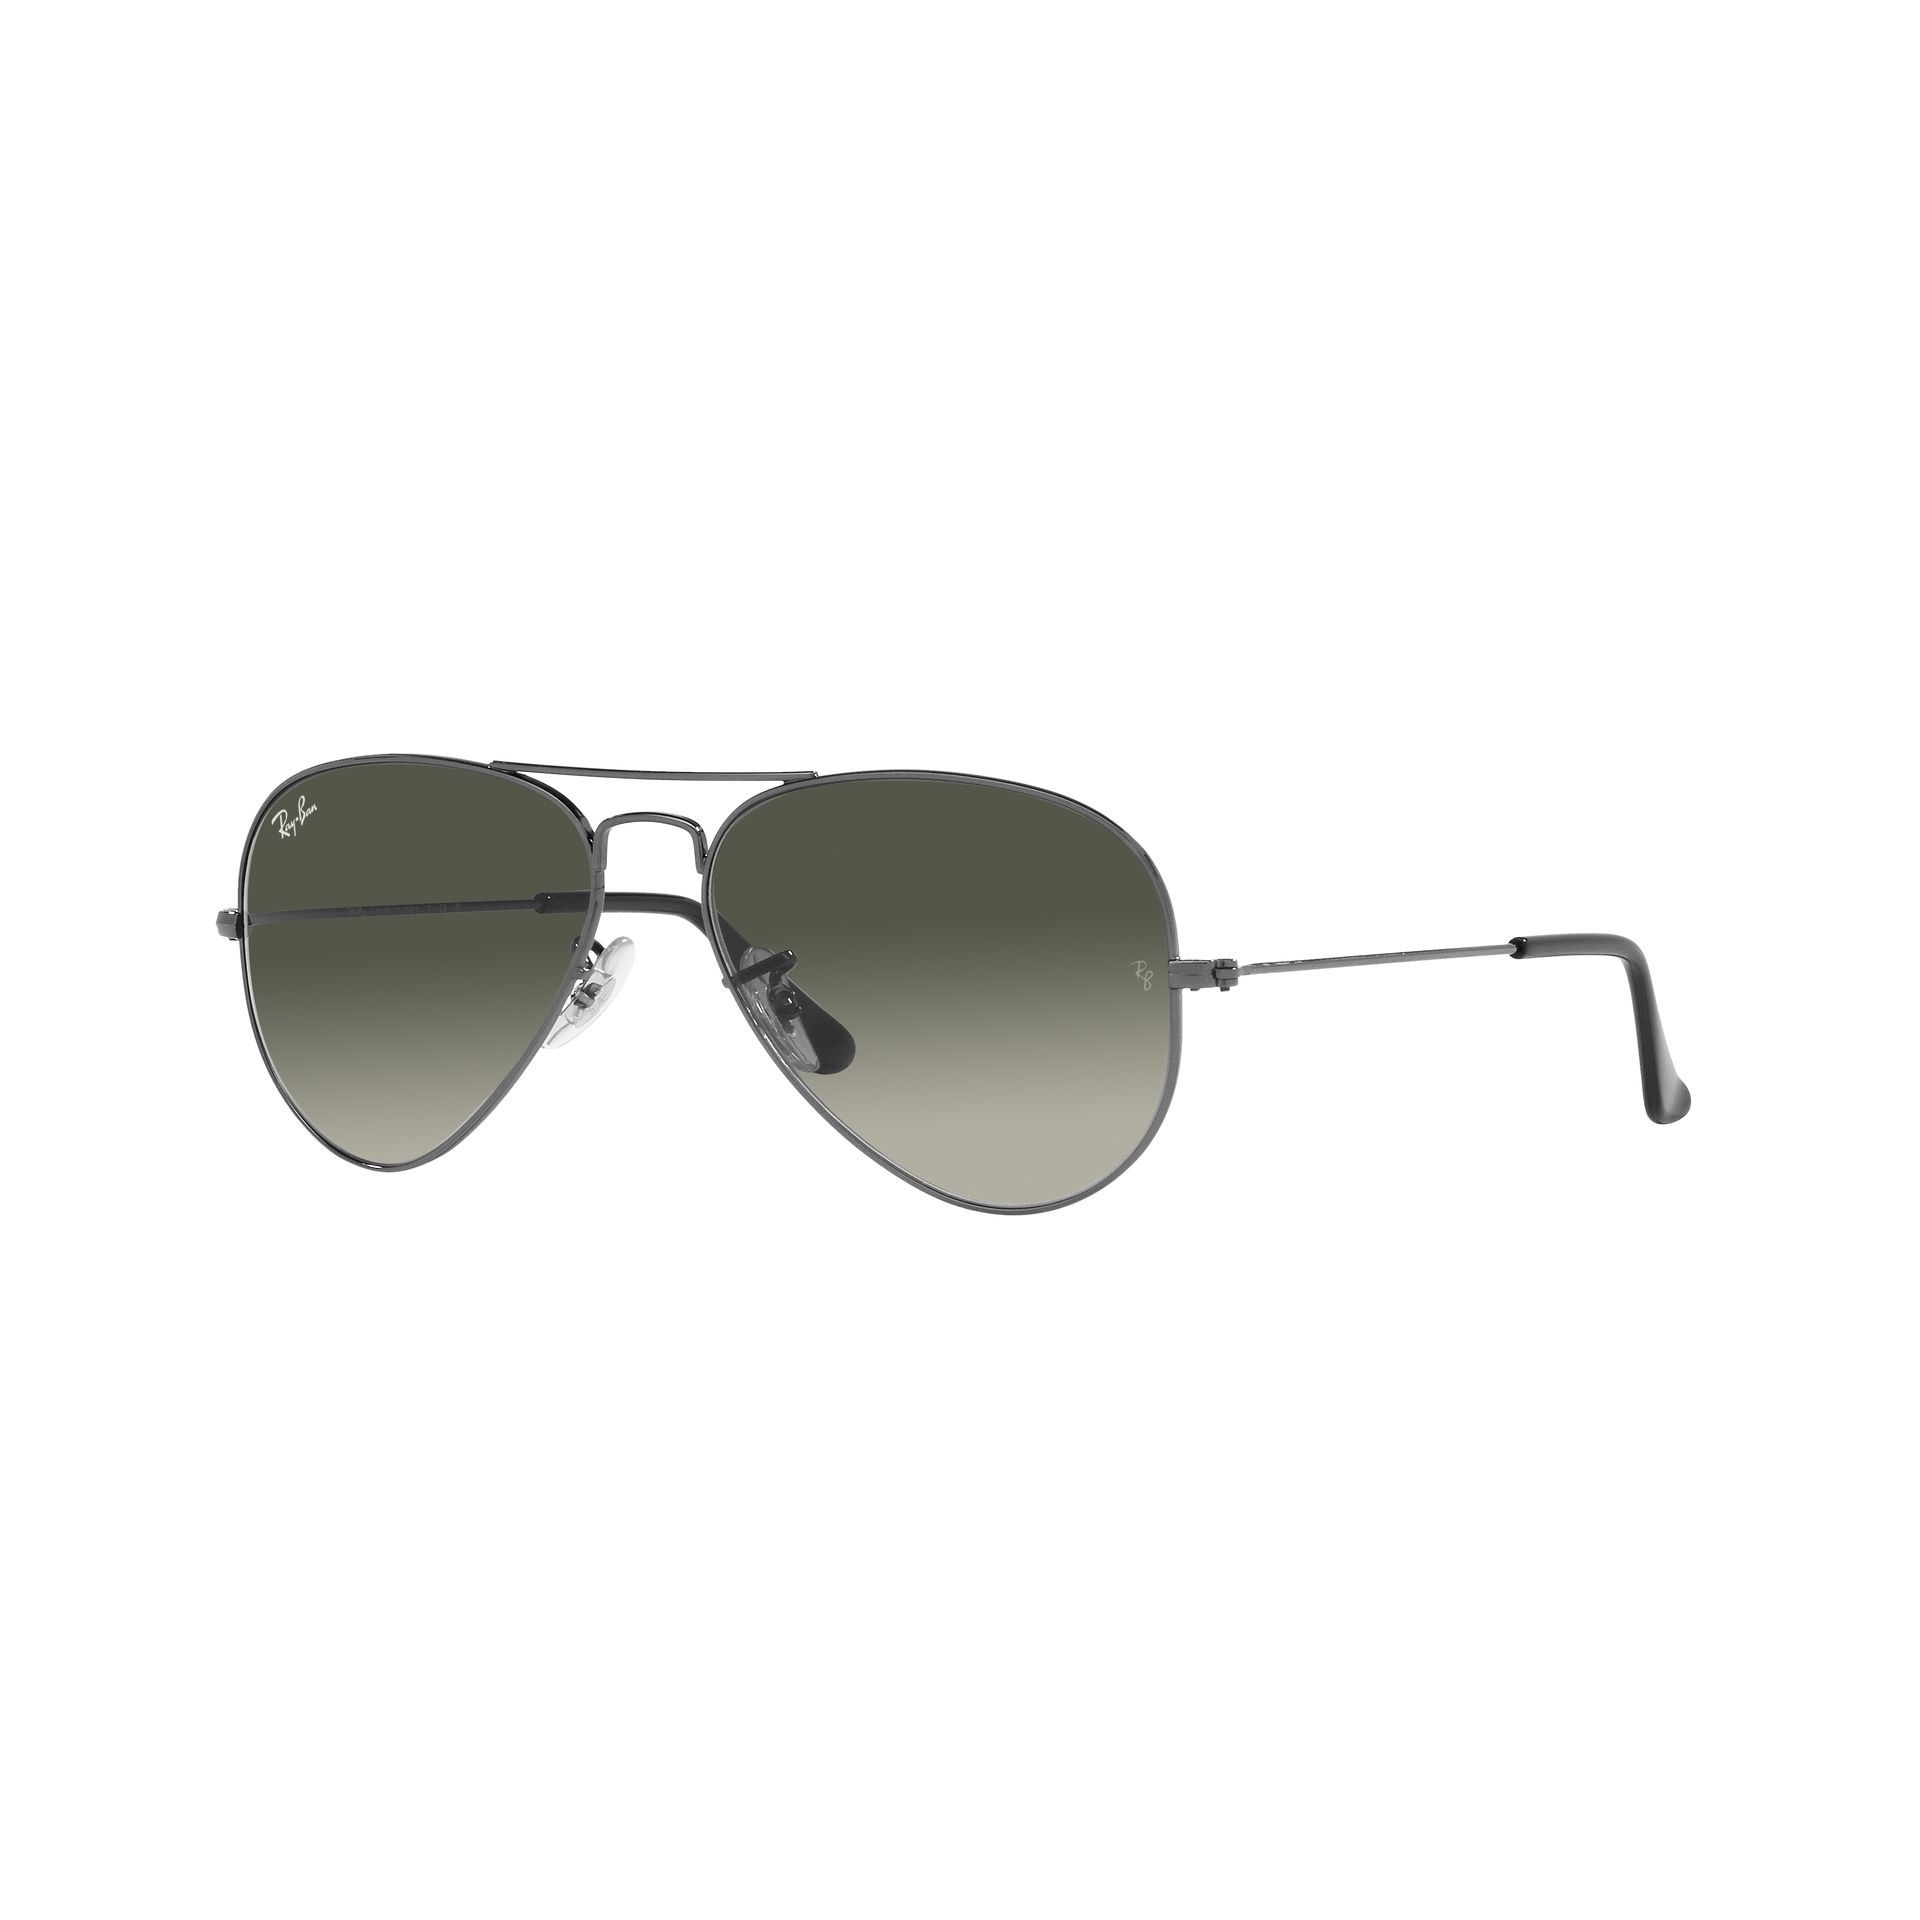 0RB3025 Aviator Sunglasses 004 71 - size 62